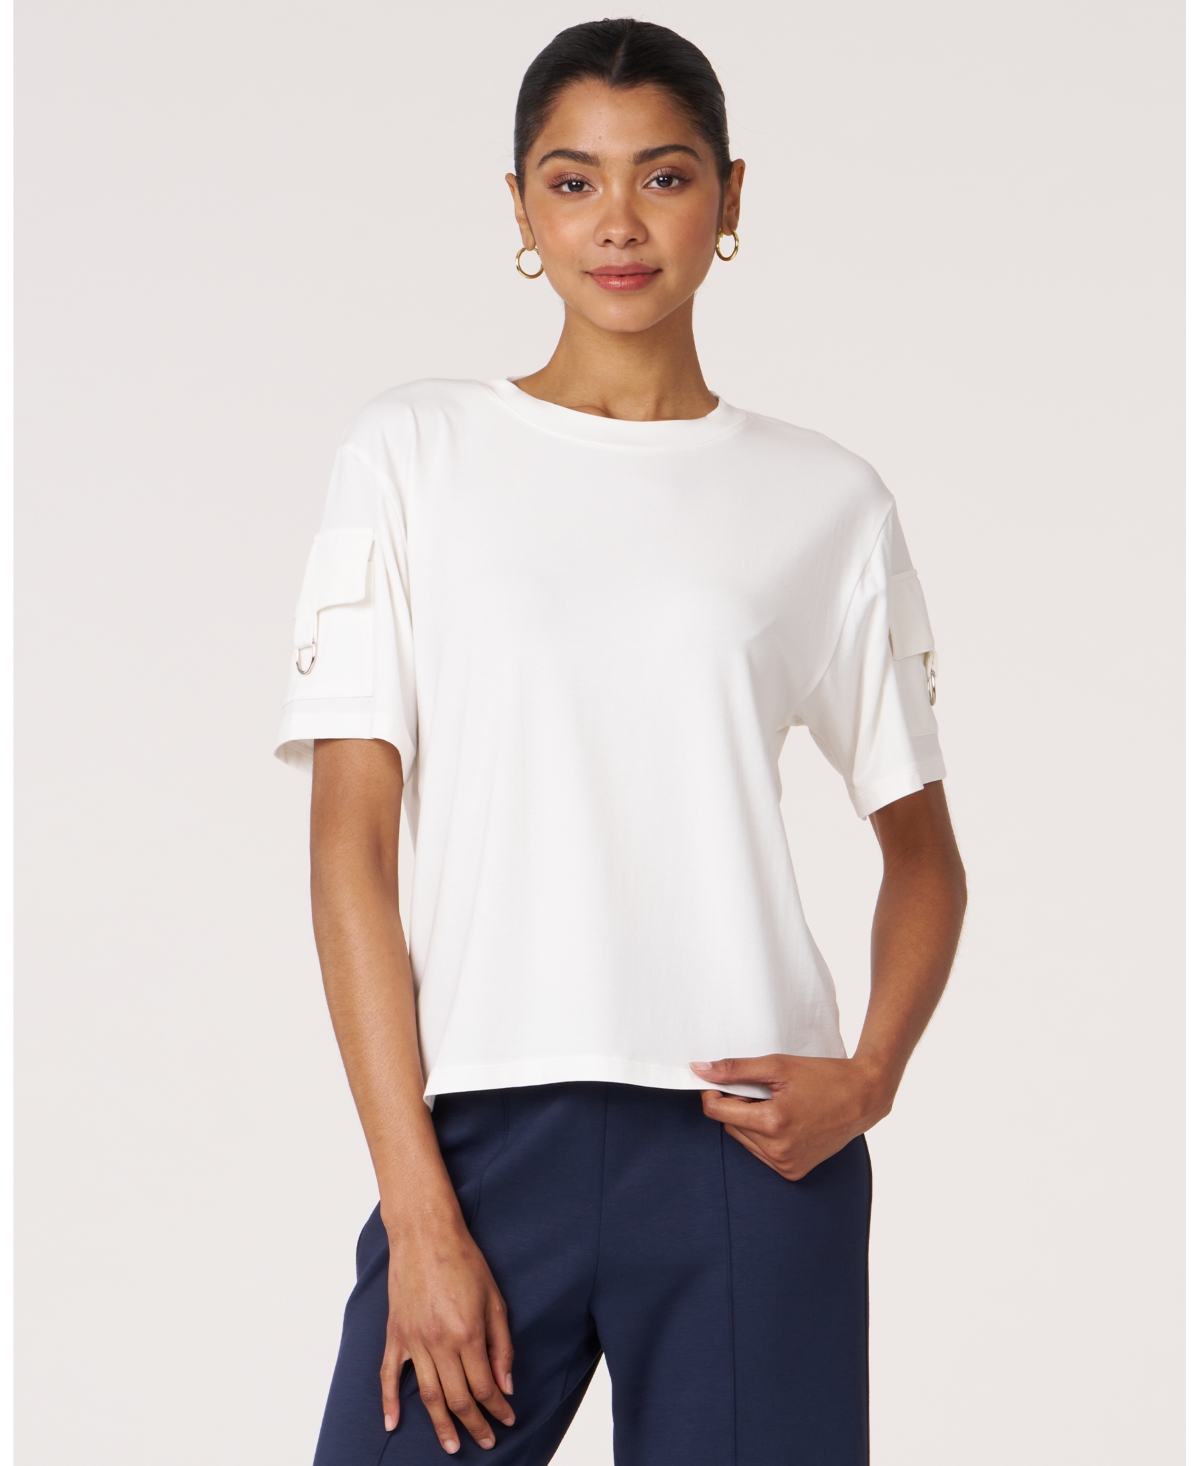 Women's Cargo Short Sleeve Top For Women - White